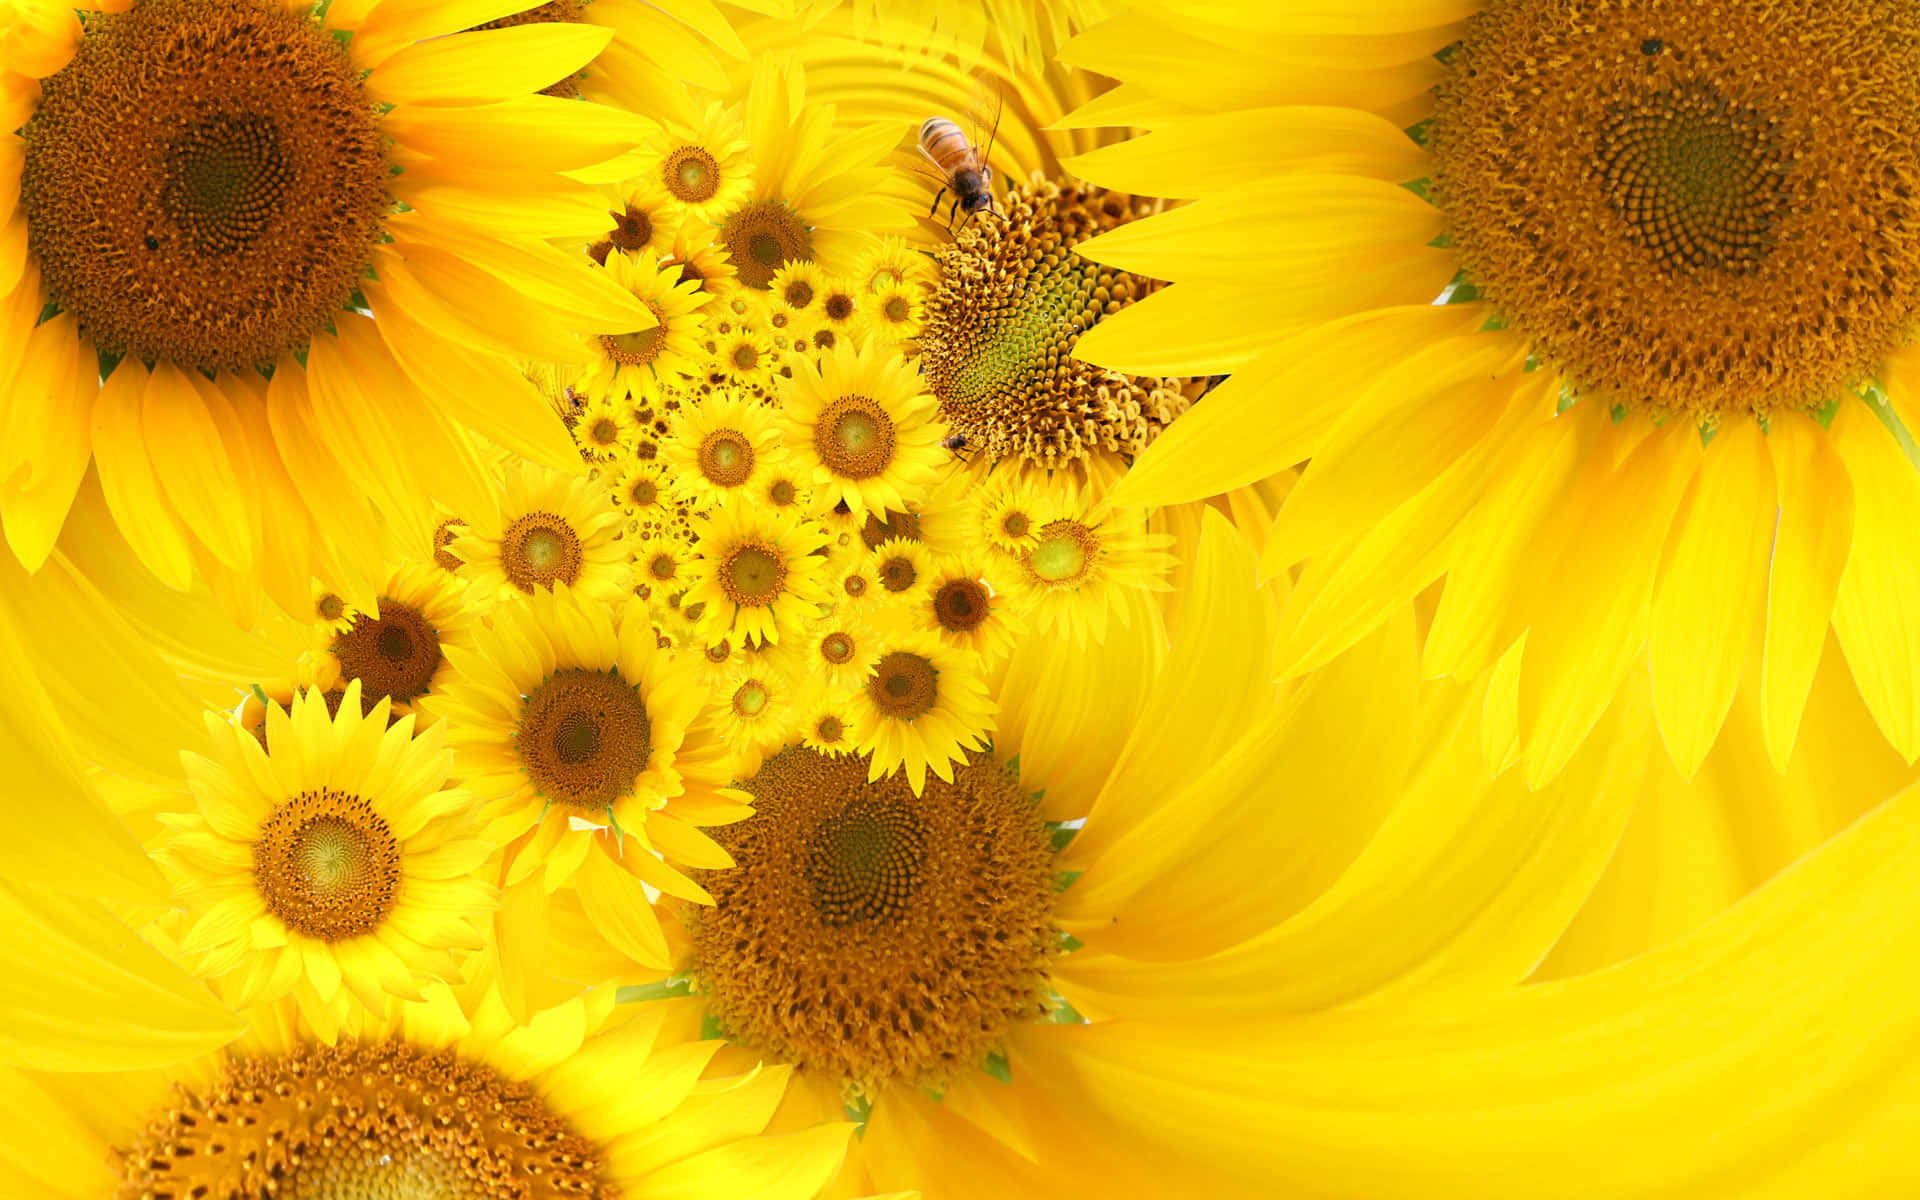 Sonnenblume,die Zum Sommerlichen Himmel Emporstrebt Wallpaper